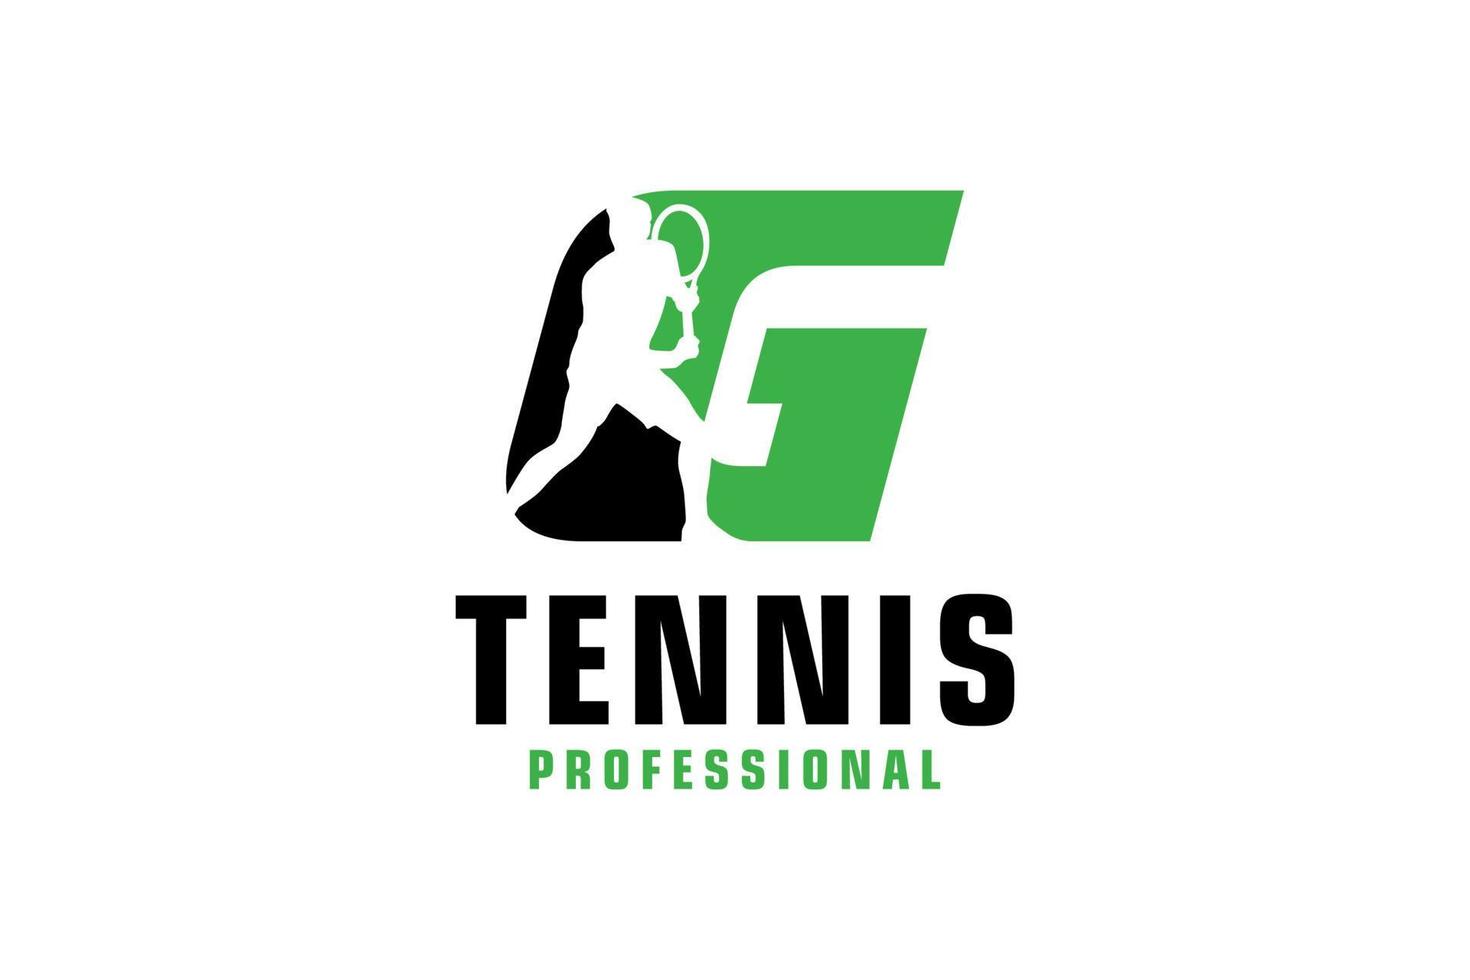 buchstabe g mit tennisspieler-silhouette-logo-design. Vektordesign-Vorlagenelemente für Sportteams oder Corporate Identity. vektor